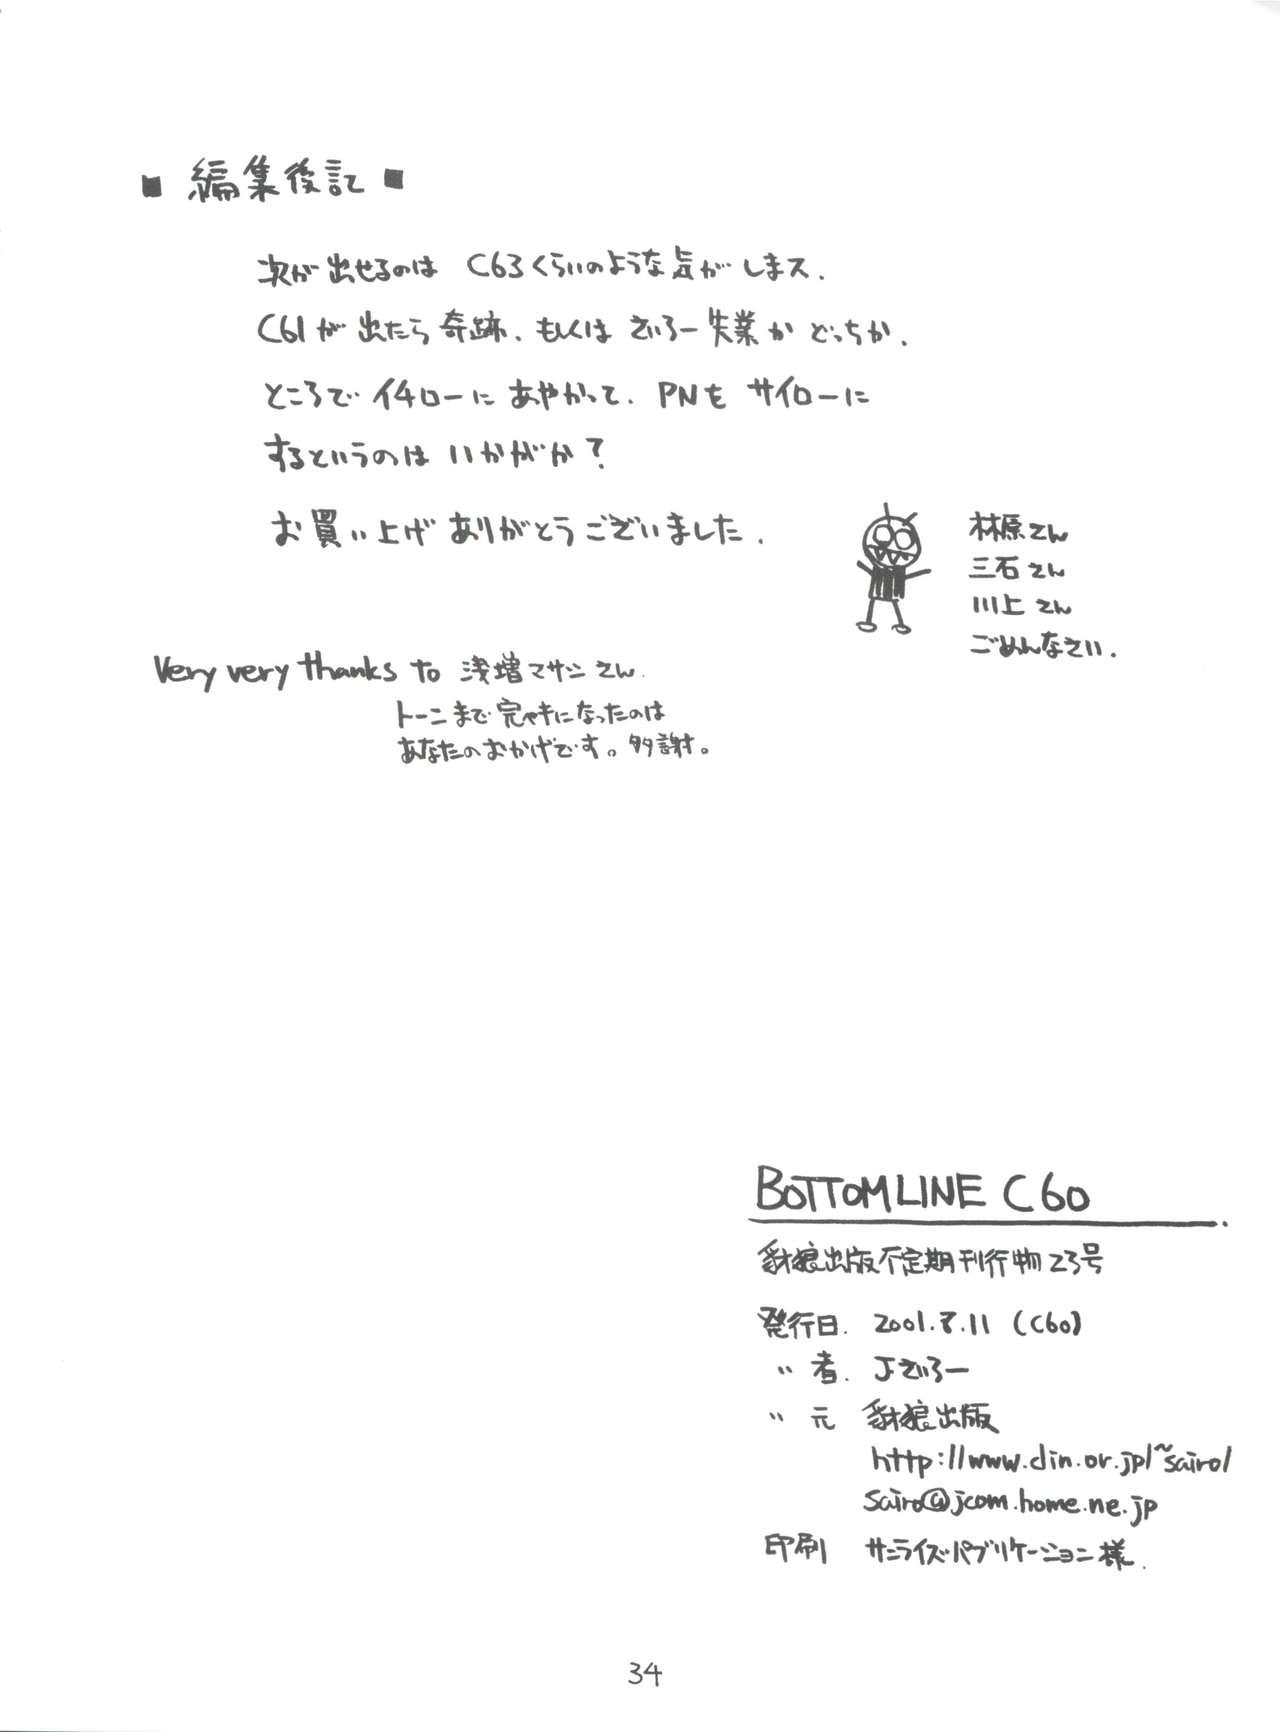 Transgender Bottomline C60 - Slayers Gakkou no kaidan Longhair - Page 33